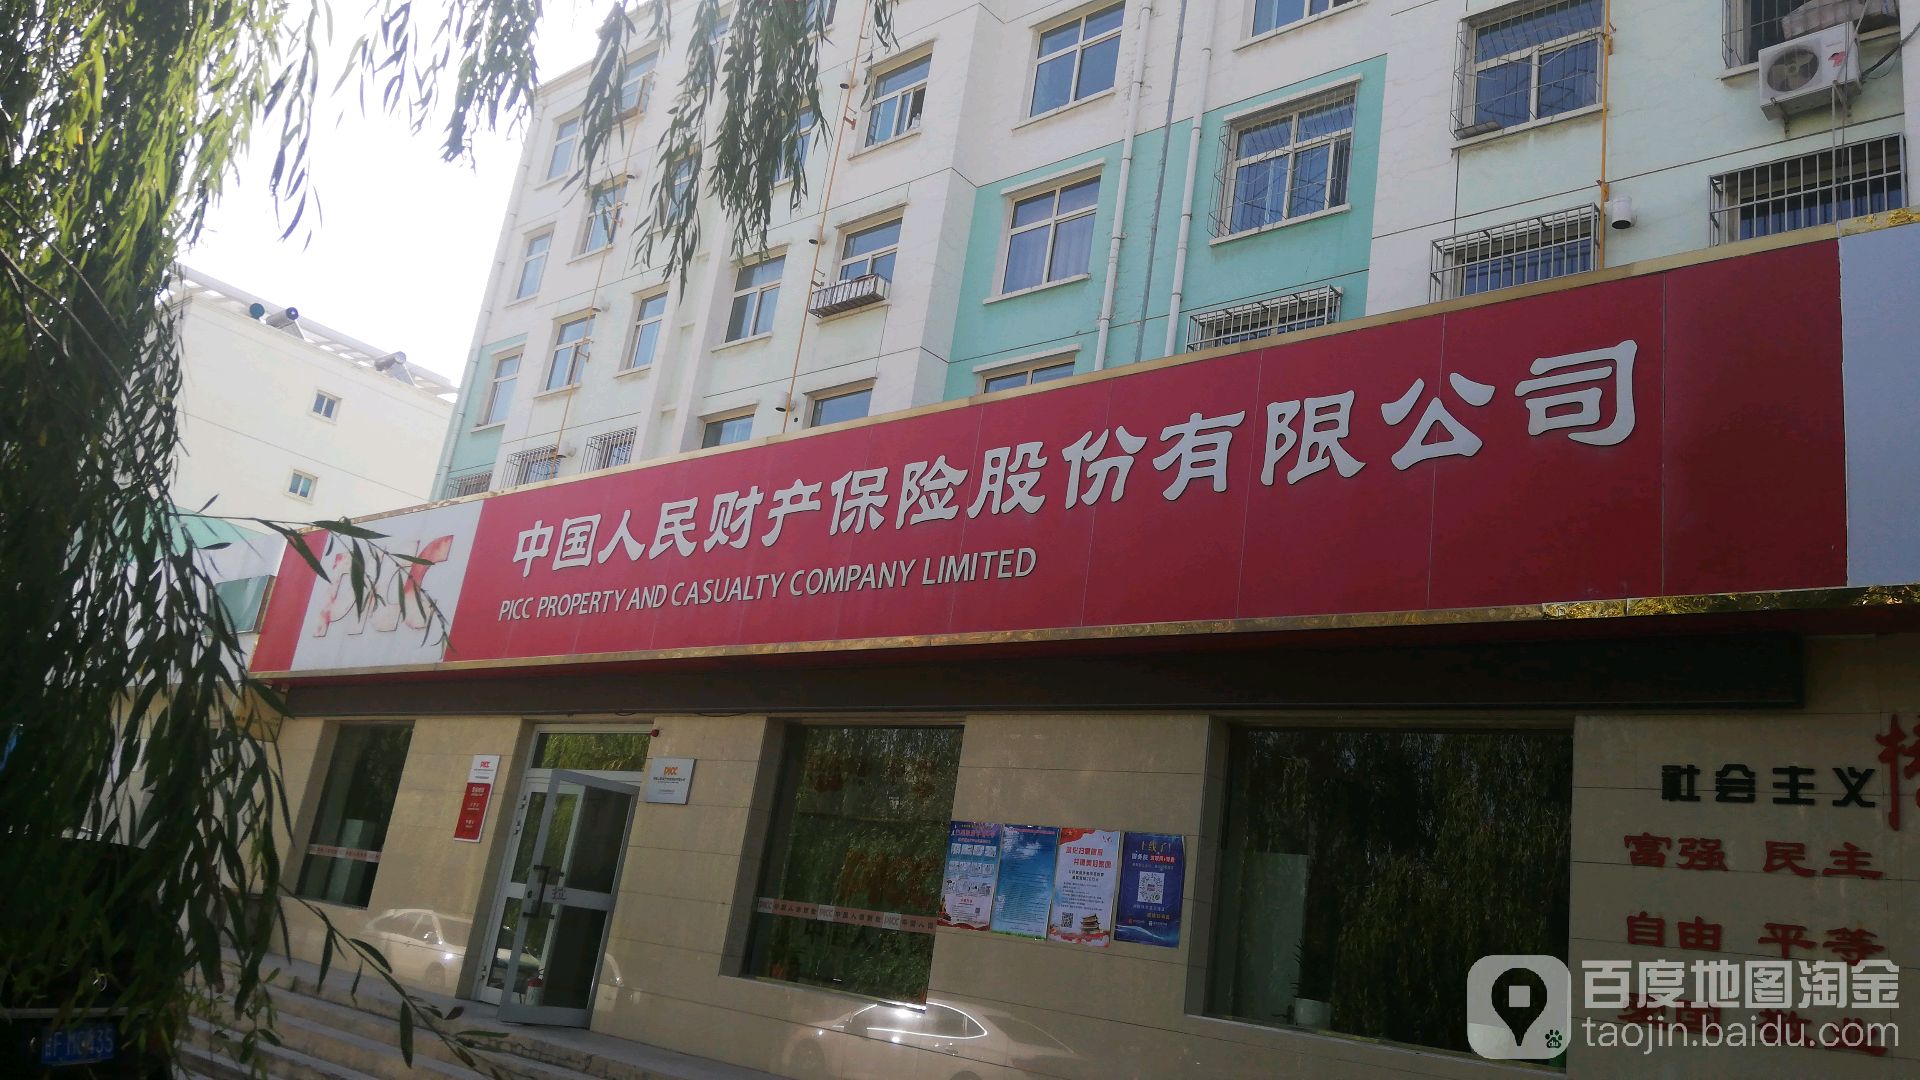 中国人人民保险(和诚西路营业部)